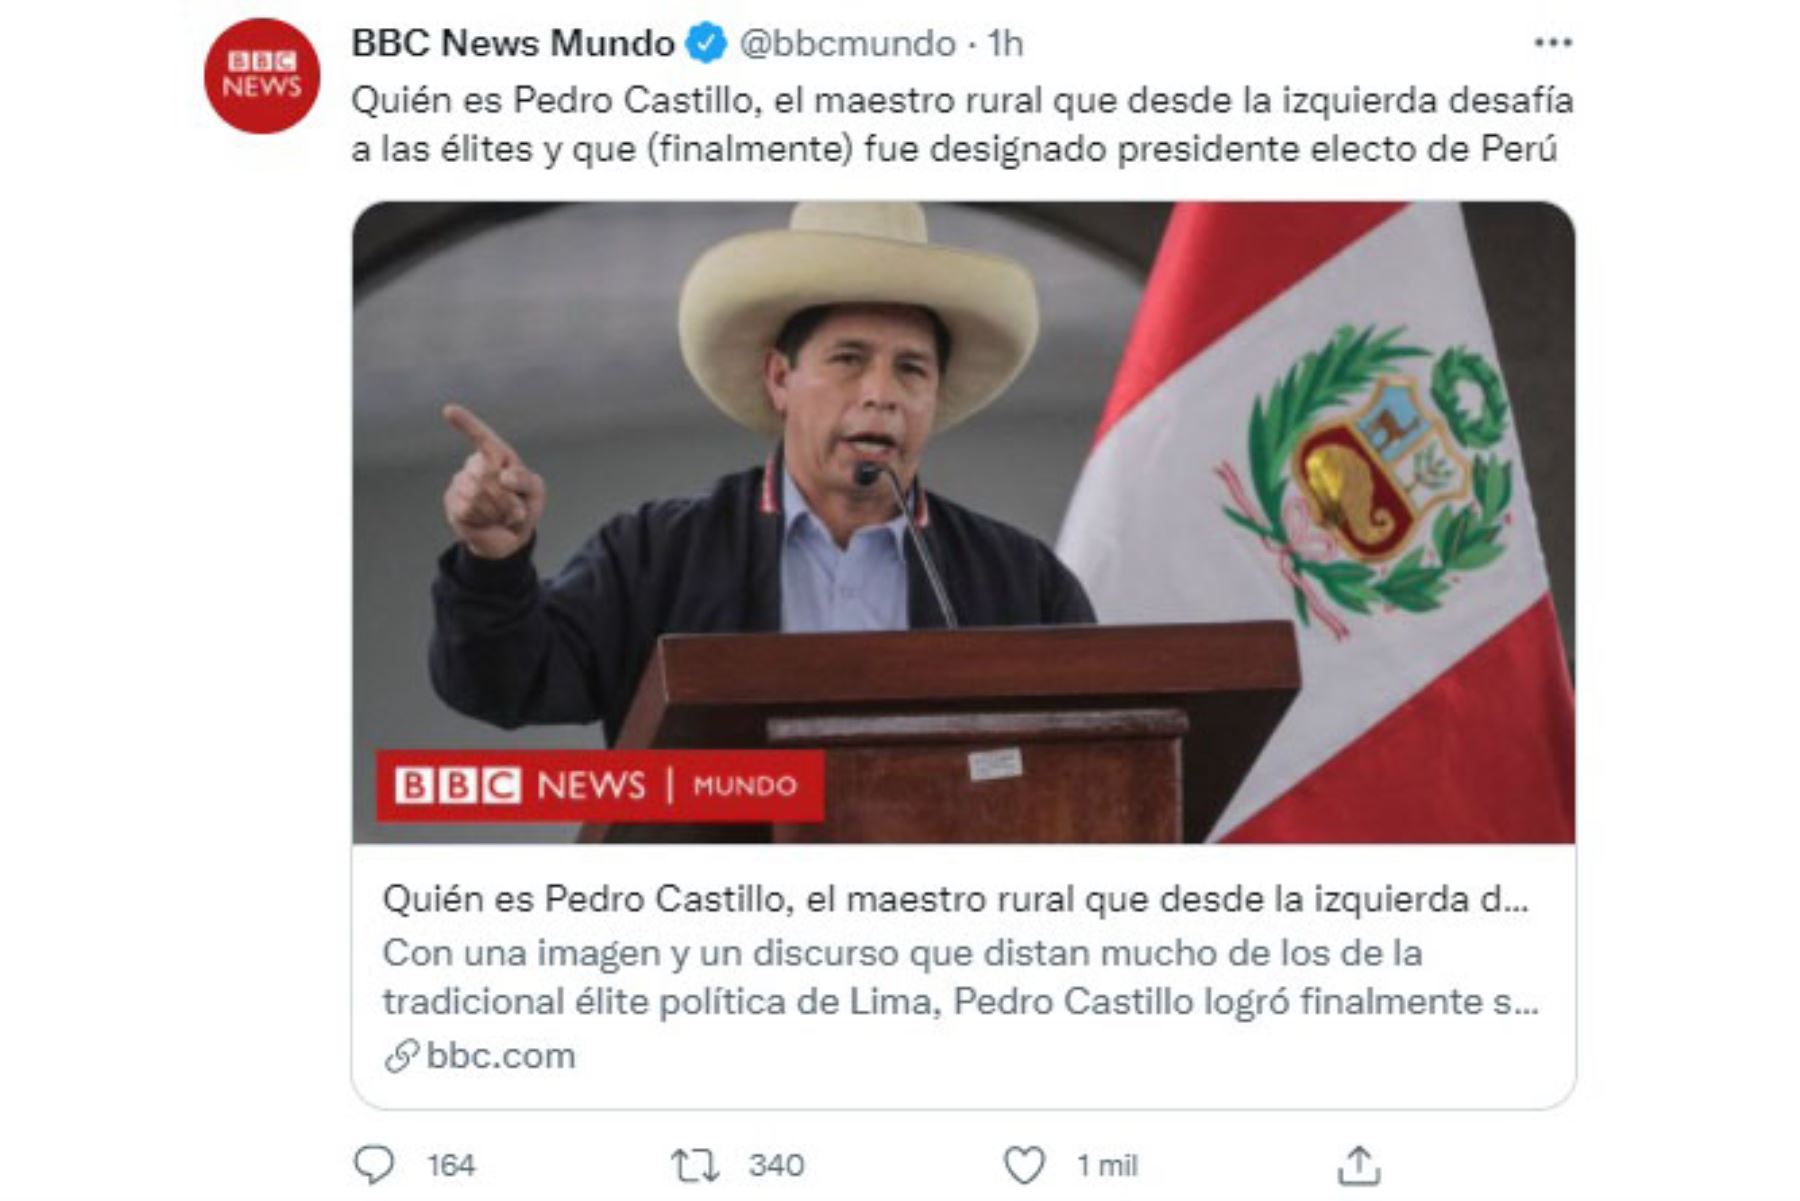 En portada BBC News Mundo. Diarios del mundo, informan sobre la proclamación del presidente electo Pedro Castillo.
Foto: Captura TV